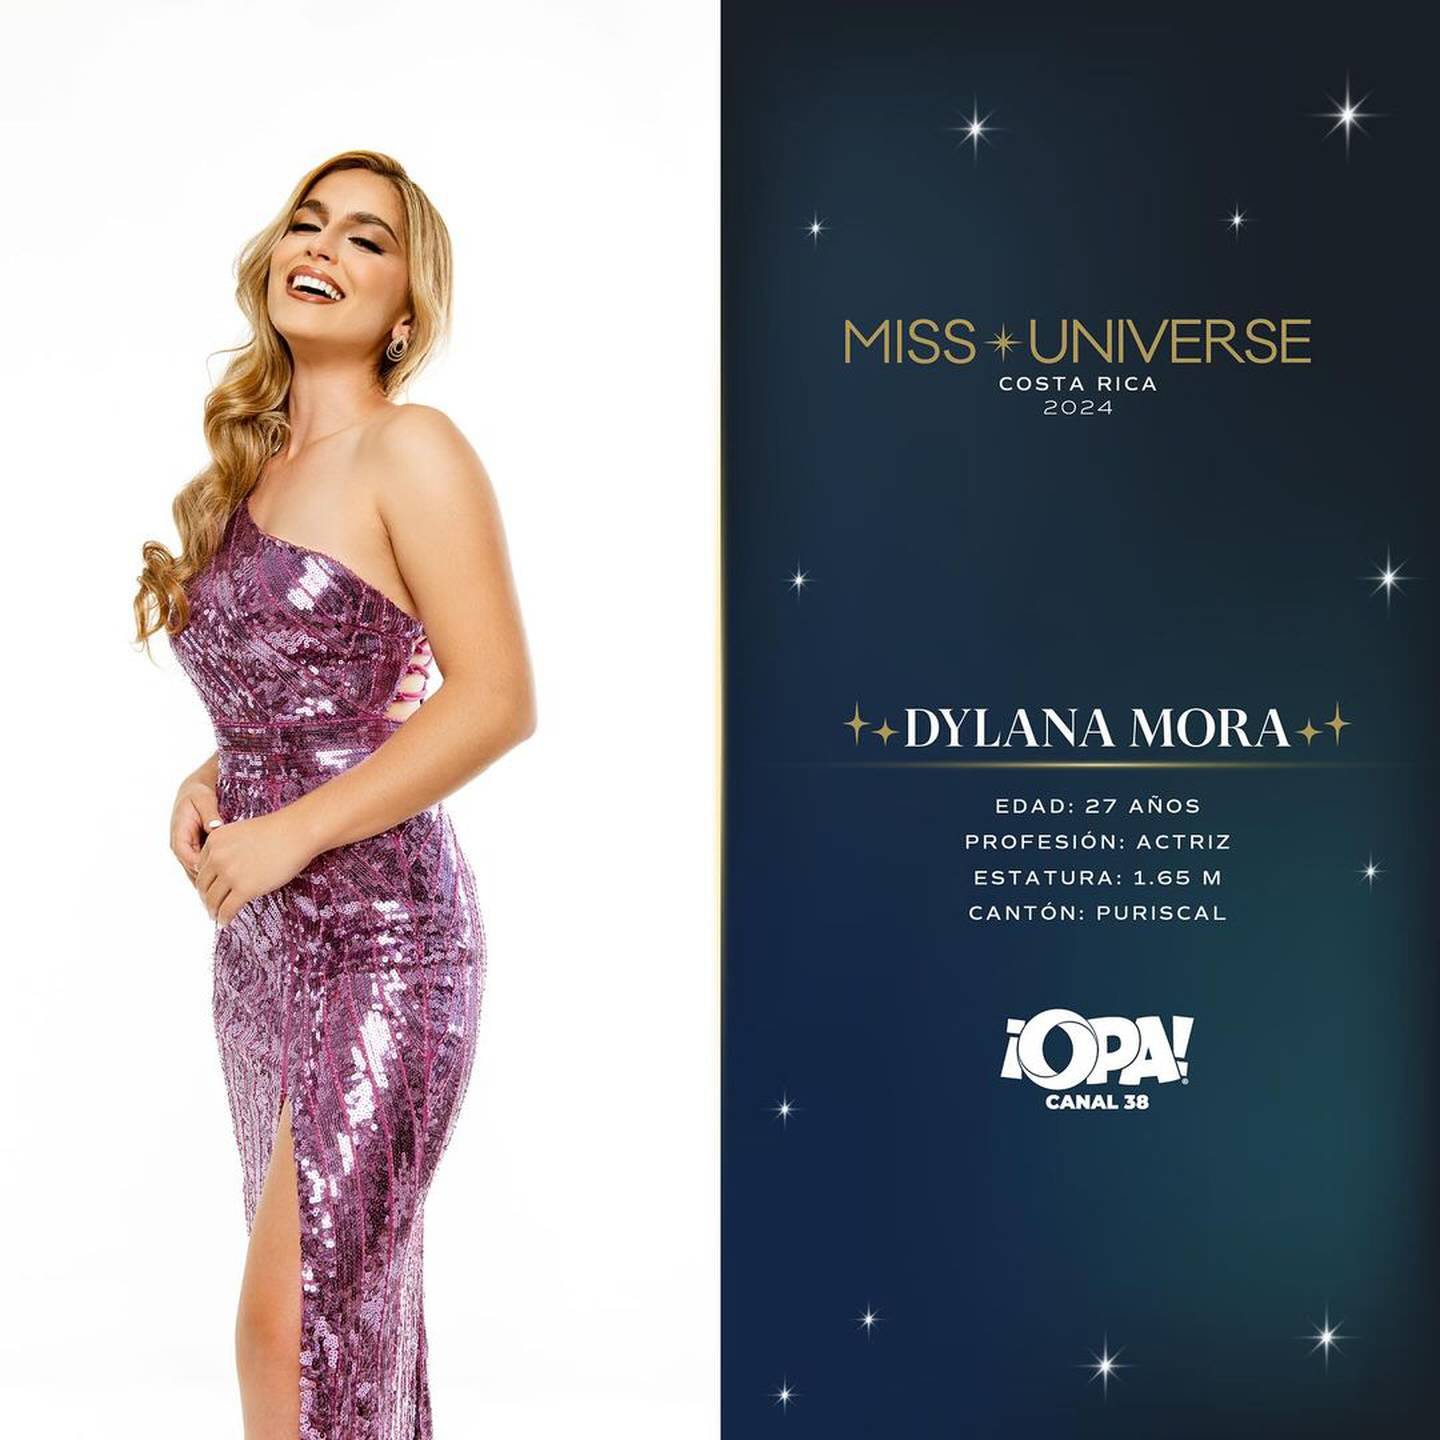 Miss Universe Costa Rica 2024
Miss Costa Rica
Miss Costa Rica 2024